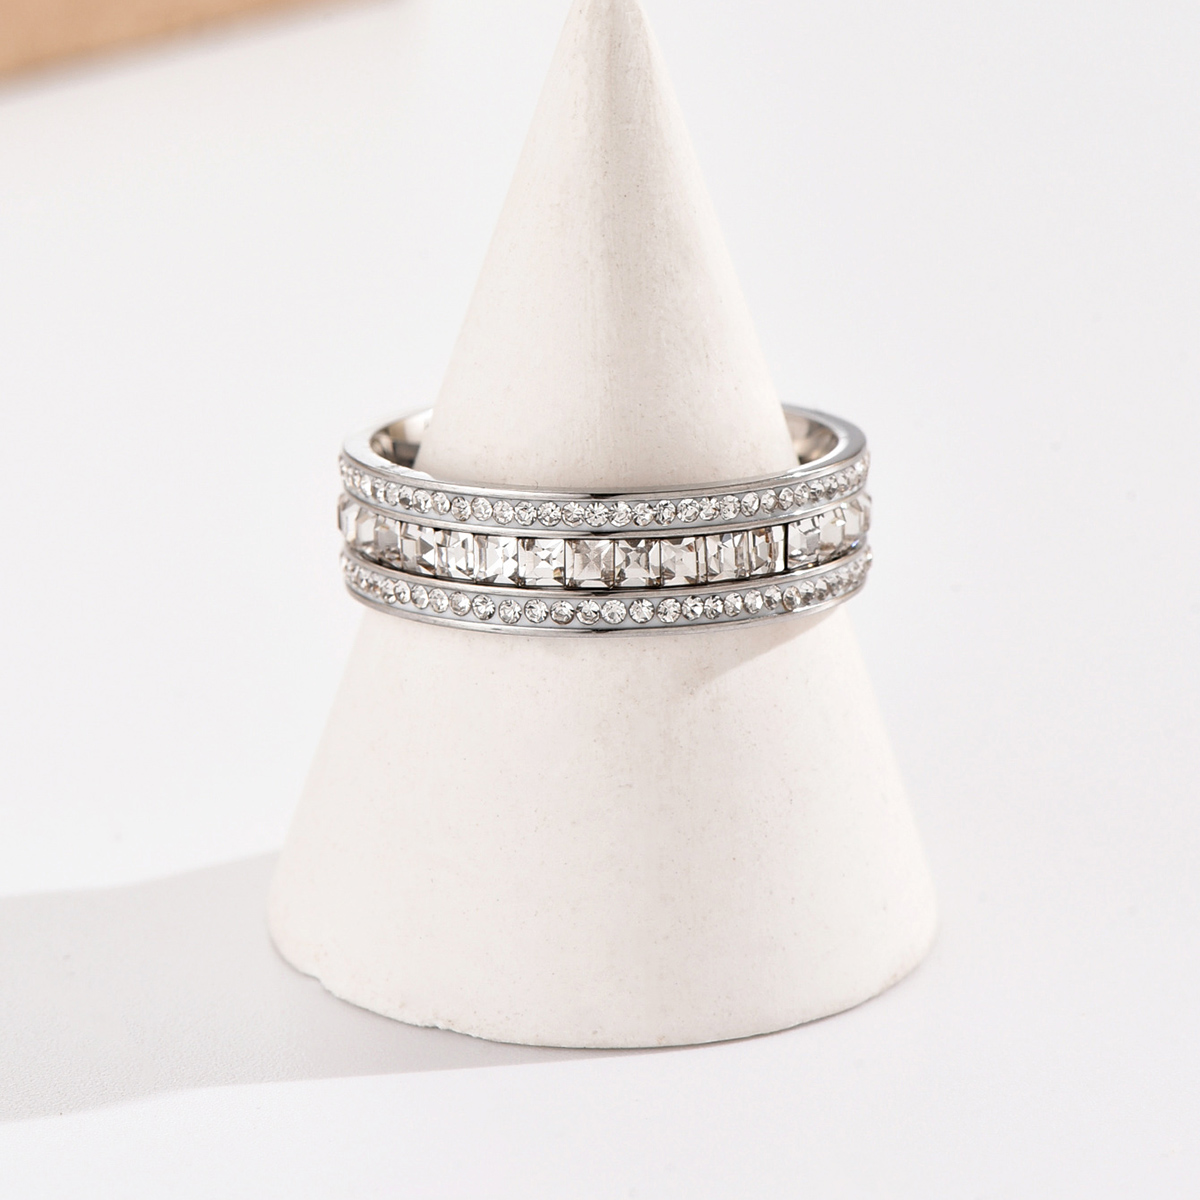 Lujosos anillos de diamantes de imitación con incrustaciones de acero inoxidable de color sólido